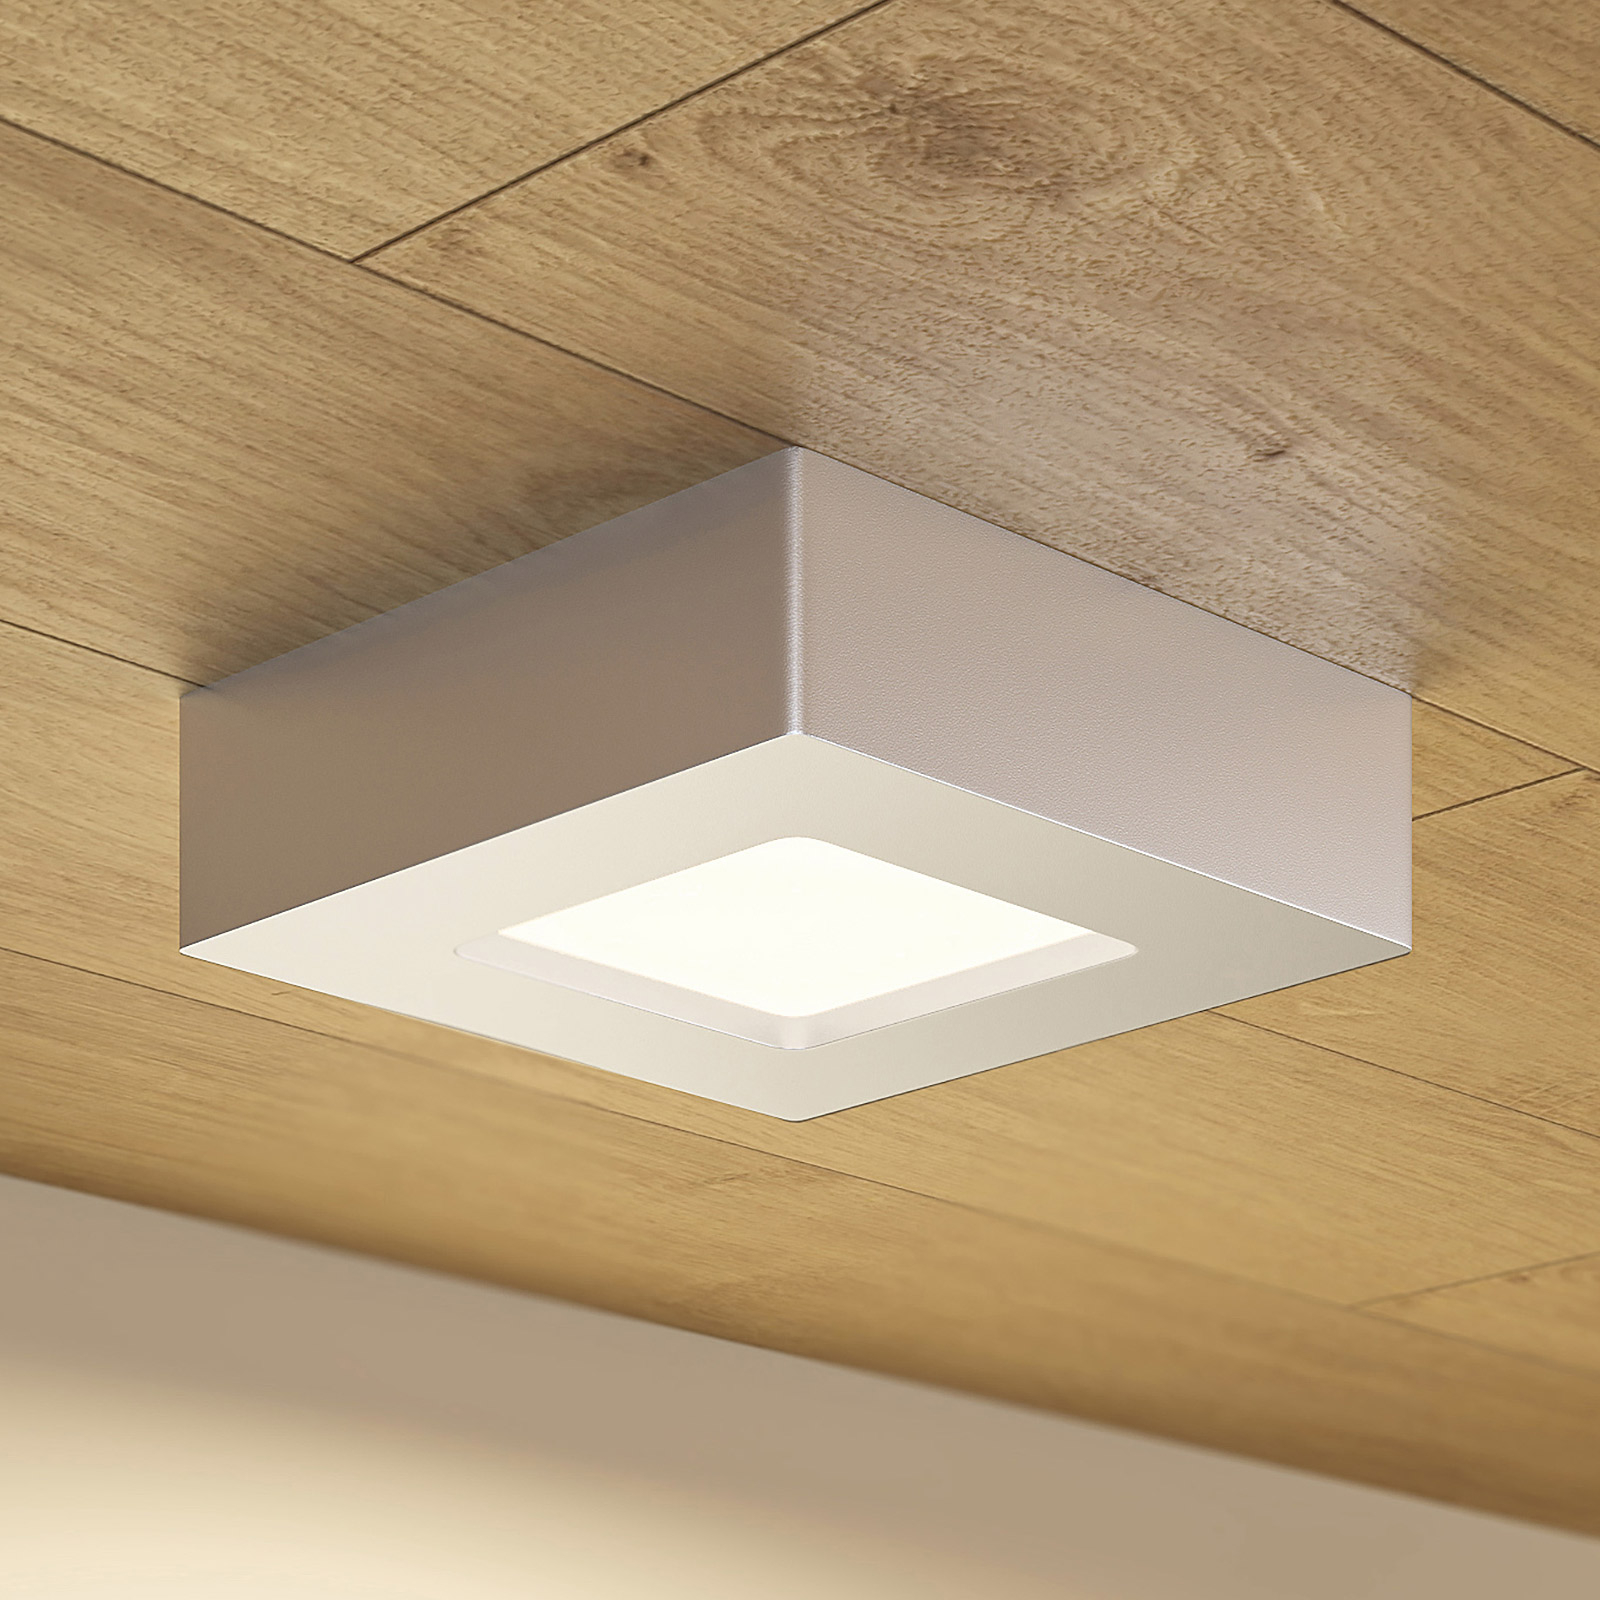 Φωτιστικό οροφής Prios LED Alette, ασημί, 12,2 cm, με δυνατότητα ρύθμισης